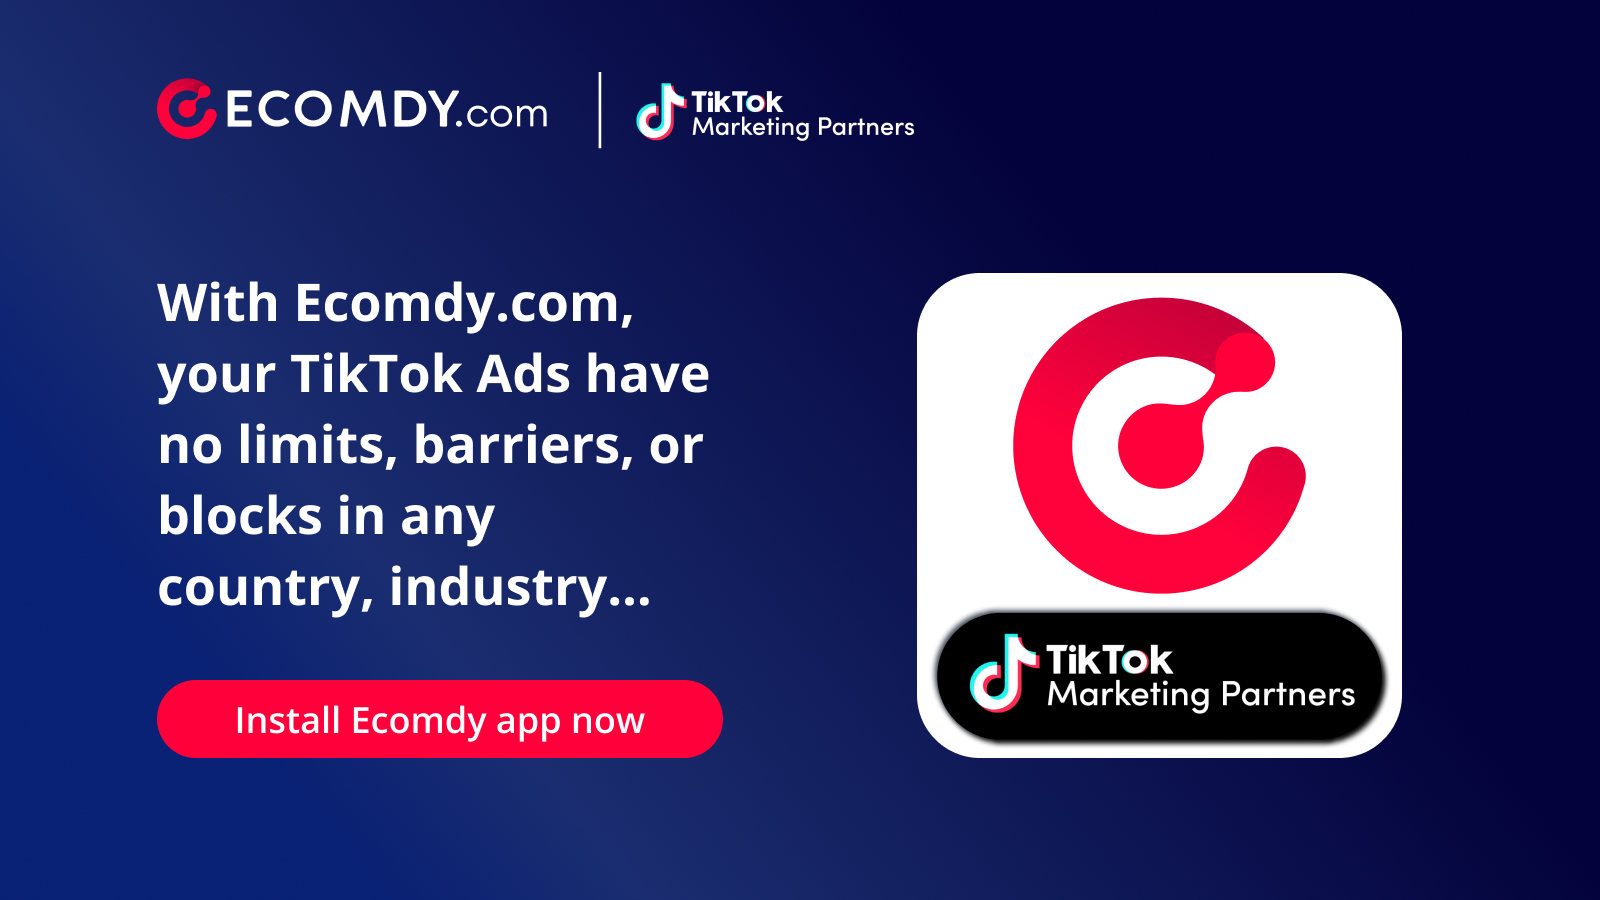 Ecomdy.com - 官方TikTok营销合作伙伴